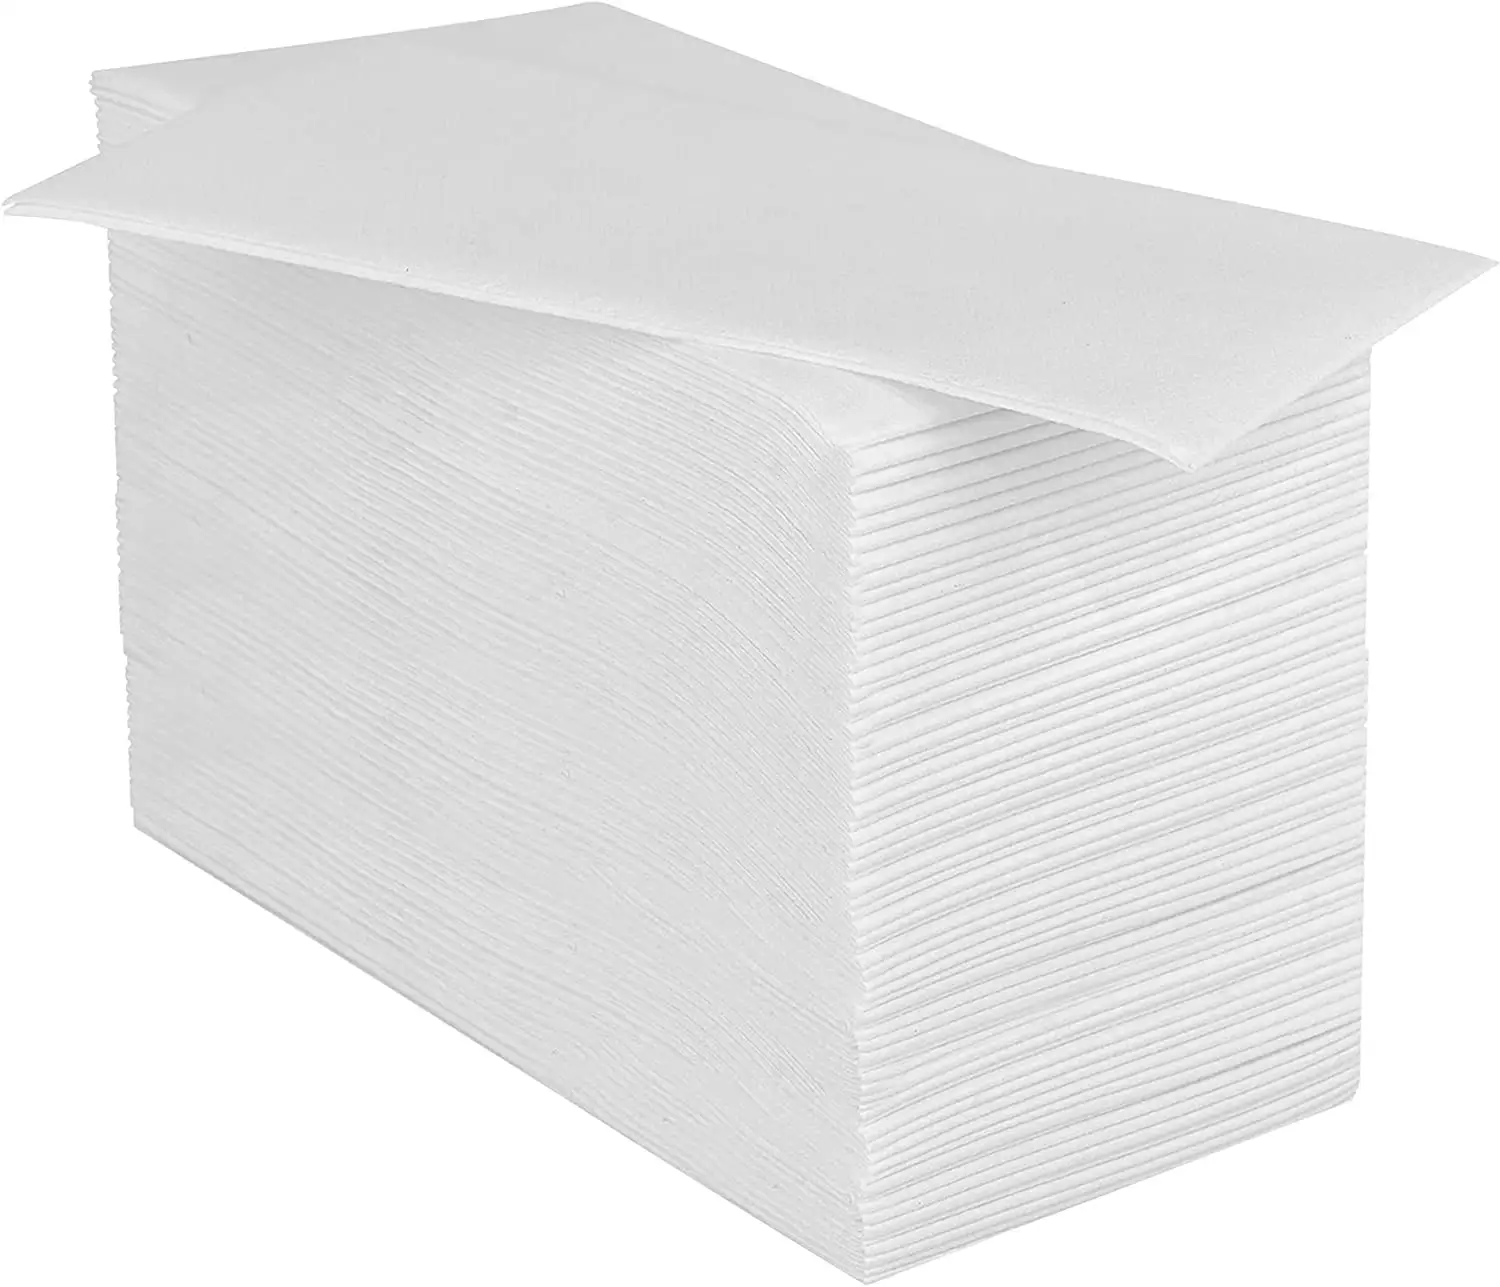 Toallas de mano desechables para baño, servilletas de papel suave y absorbente para invitados, decorativas, para Kitcn